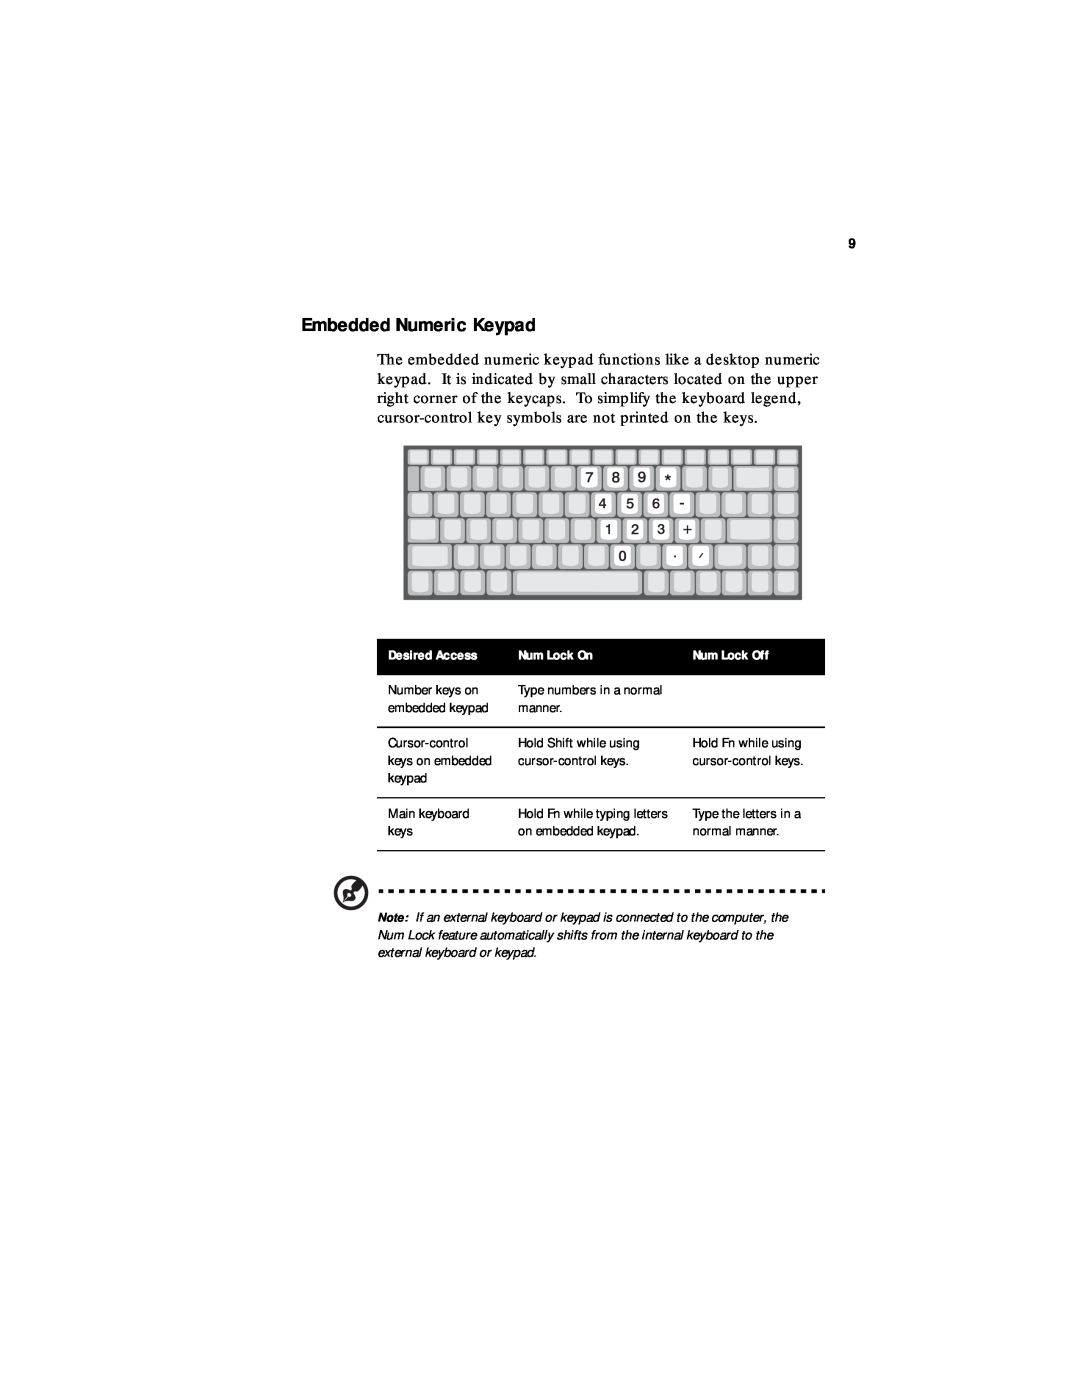 Acer 330 Series manual Embedded Numeric Keypad, Desired Access, Num Lock On, Num Lock Off 